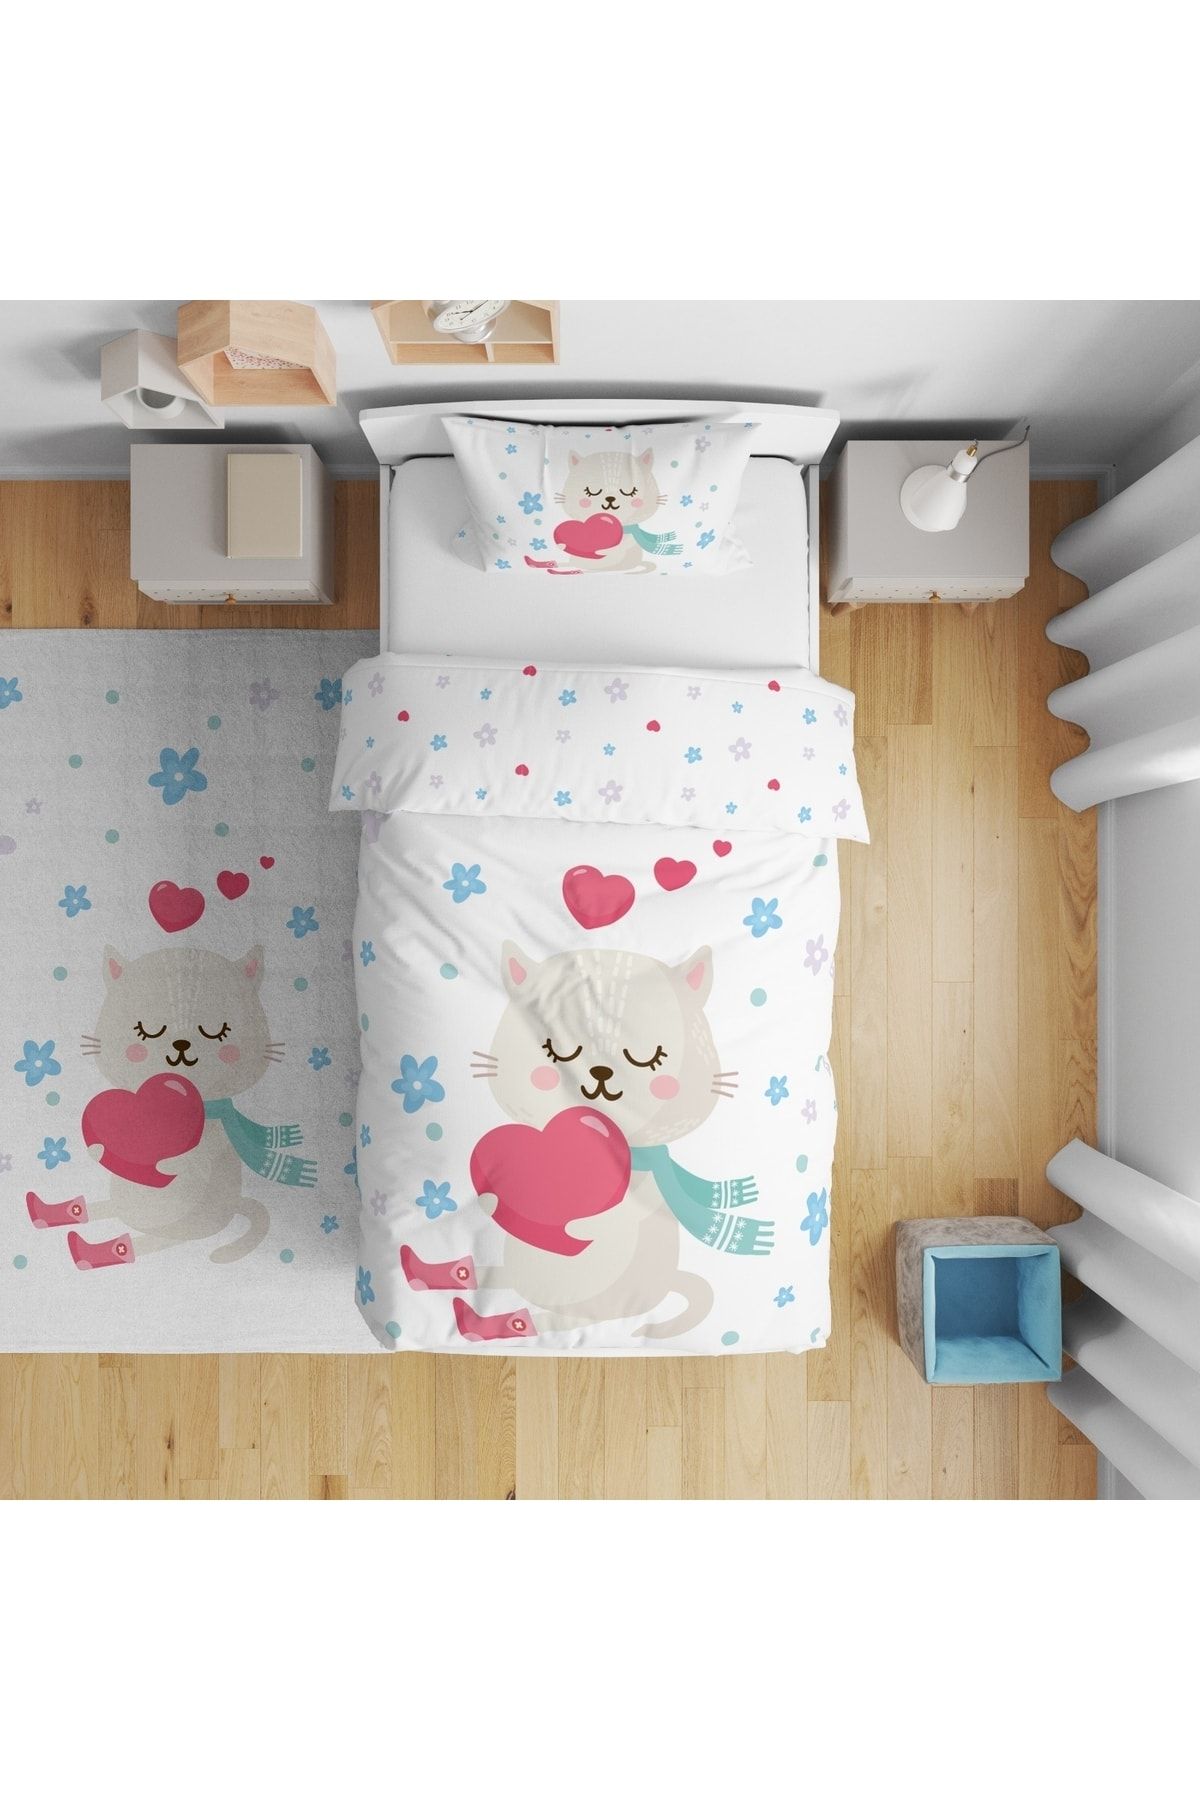 TuGu home baby Tugu Home&baby Çift Taraflı Dijital Baskılı Pamuklu Micro Saten Çocuk Odası Tek Kişilik Nevresim13